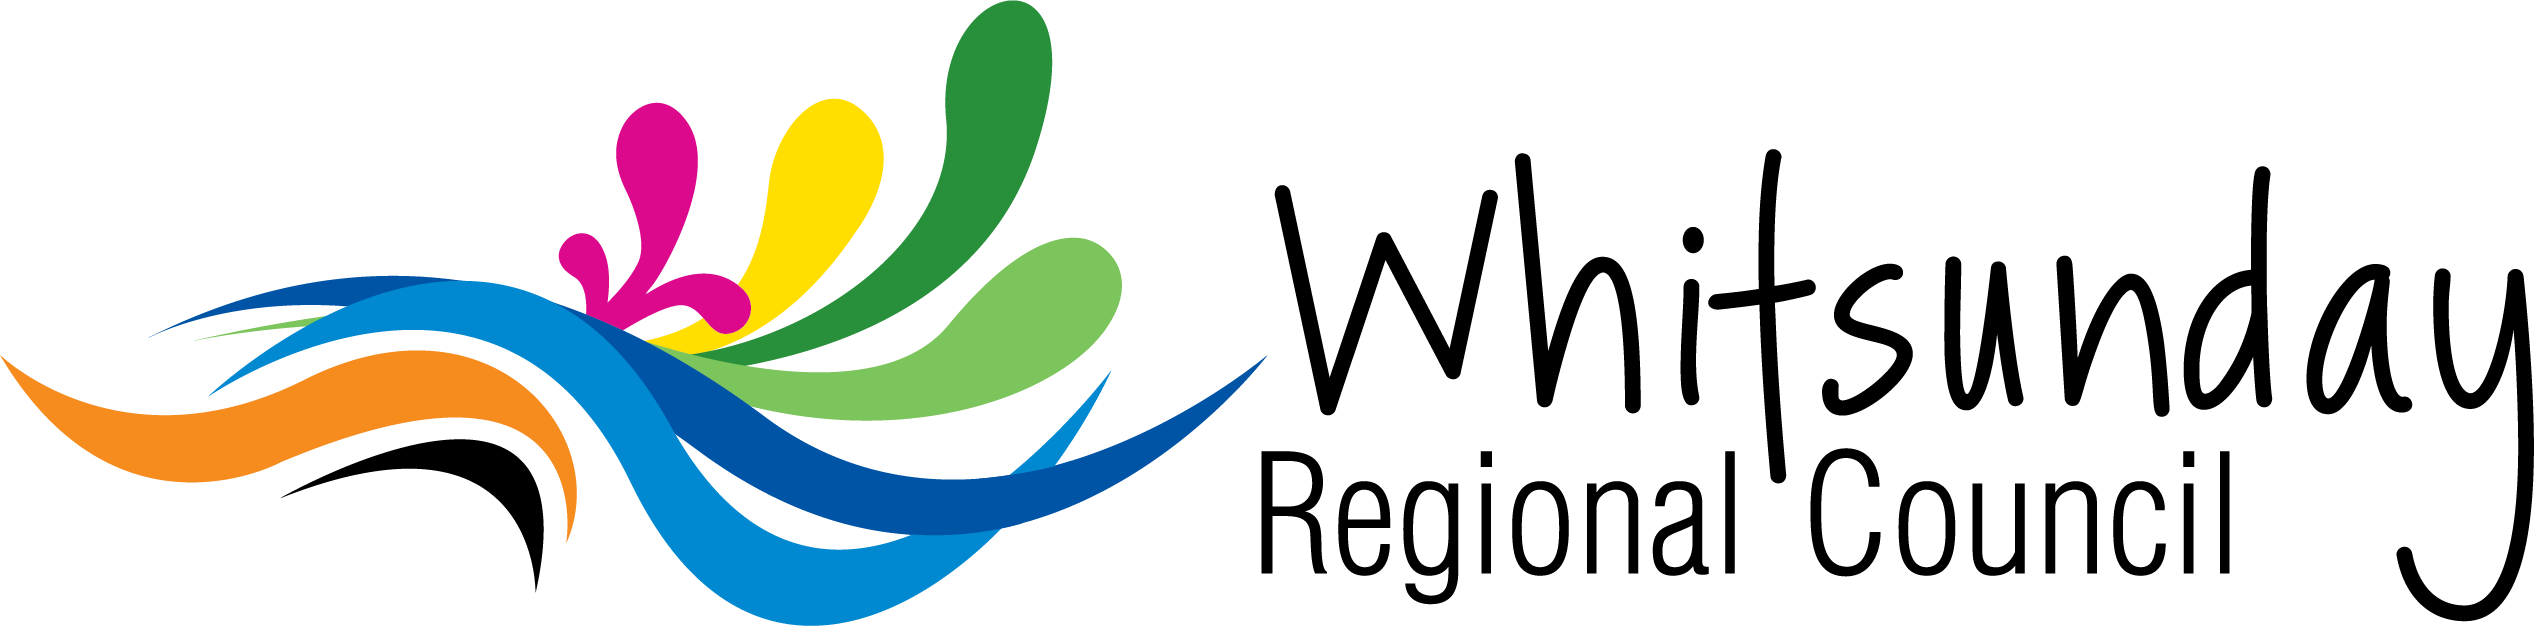 Whitsunday Regional Council Logo